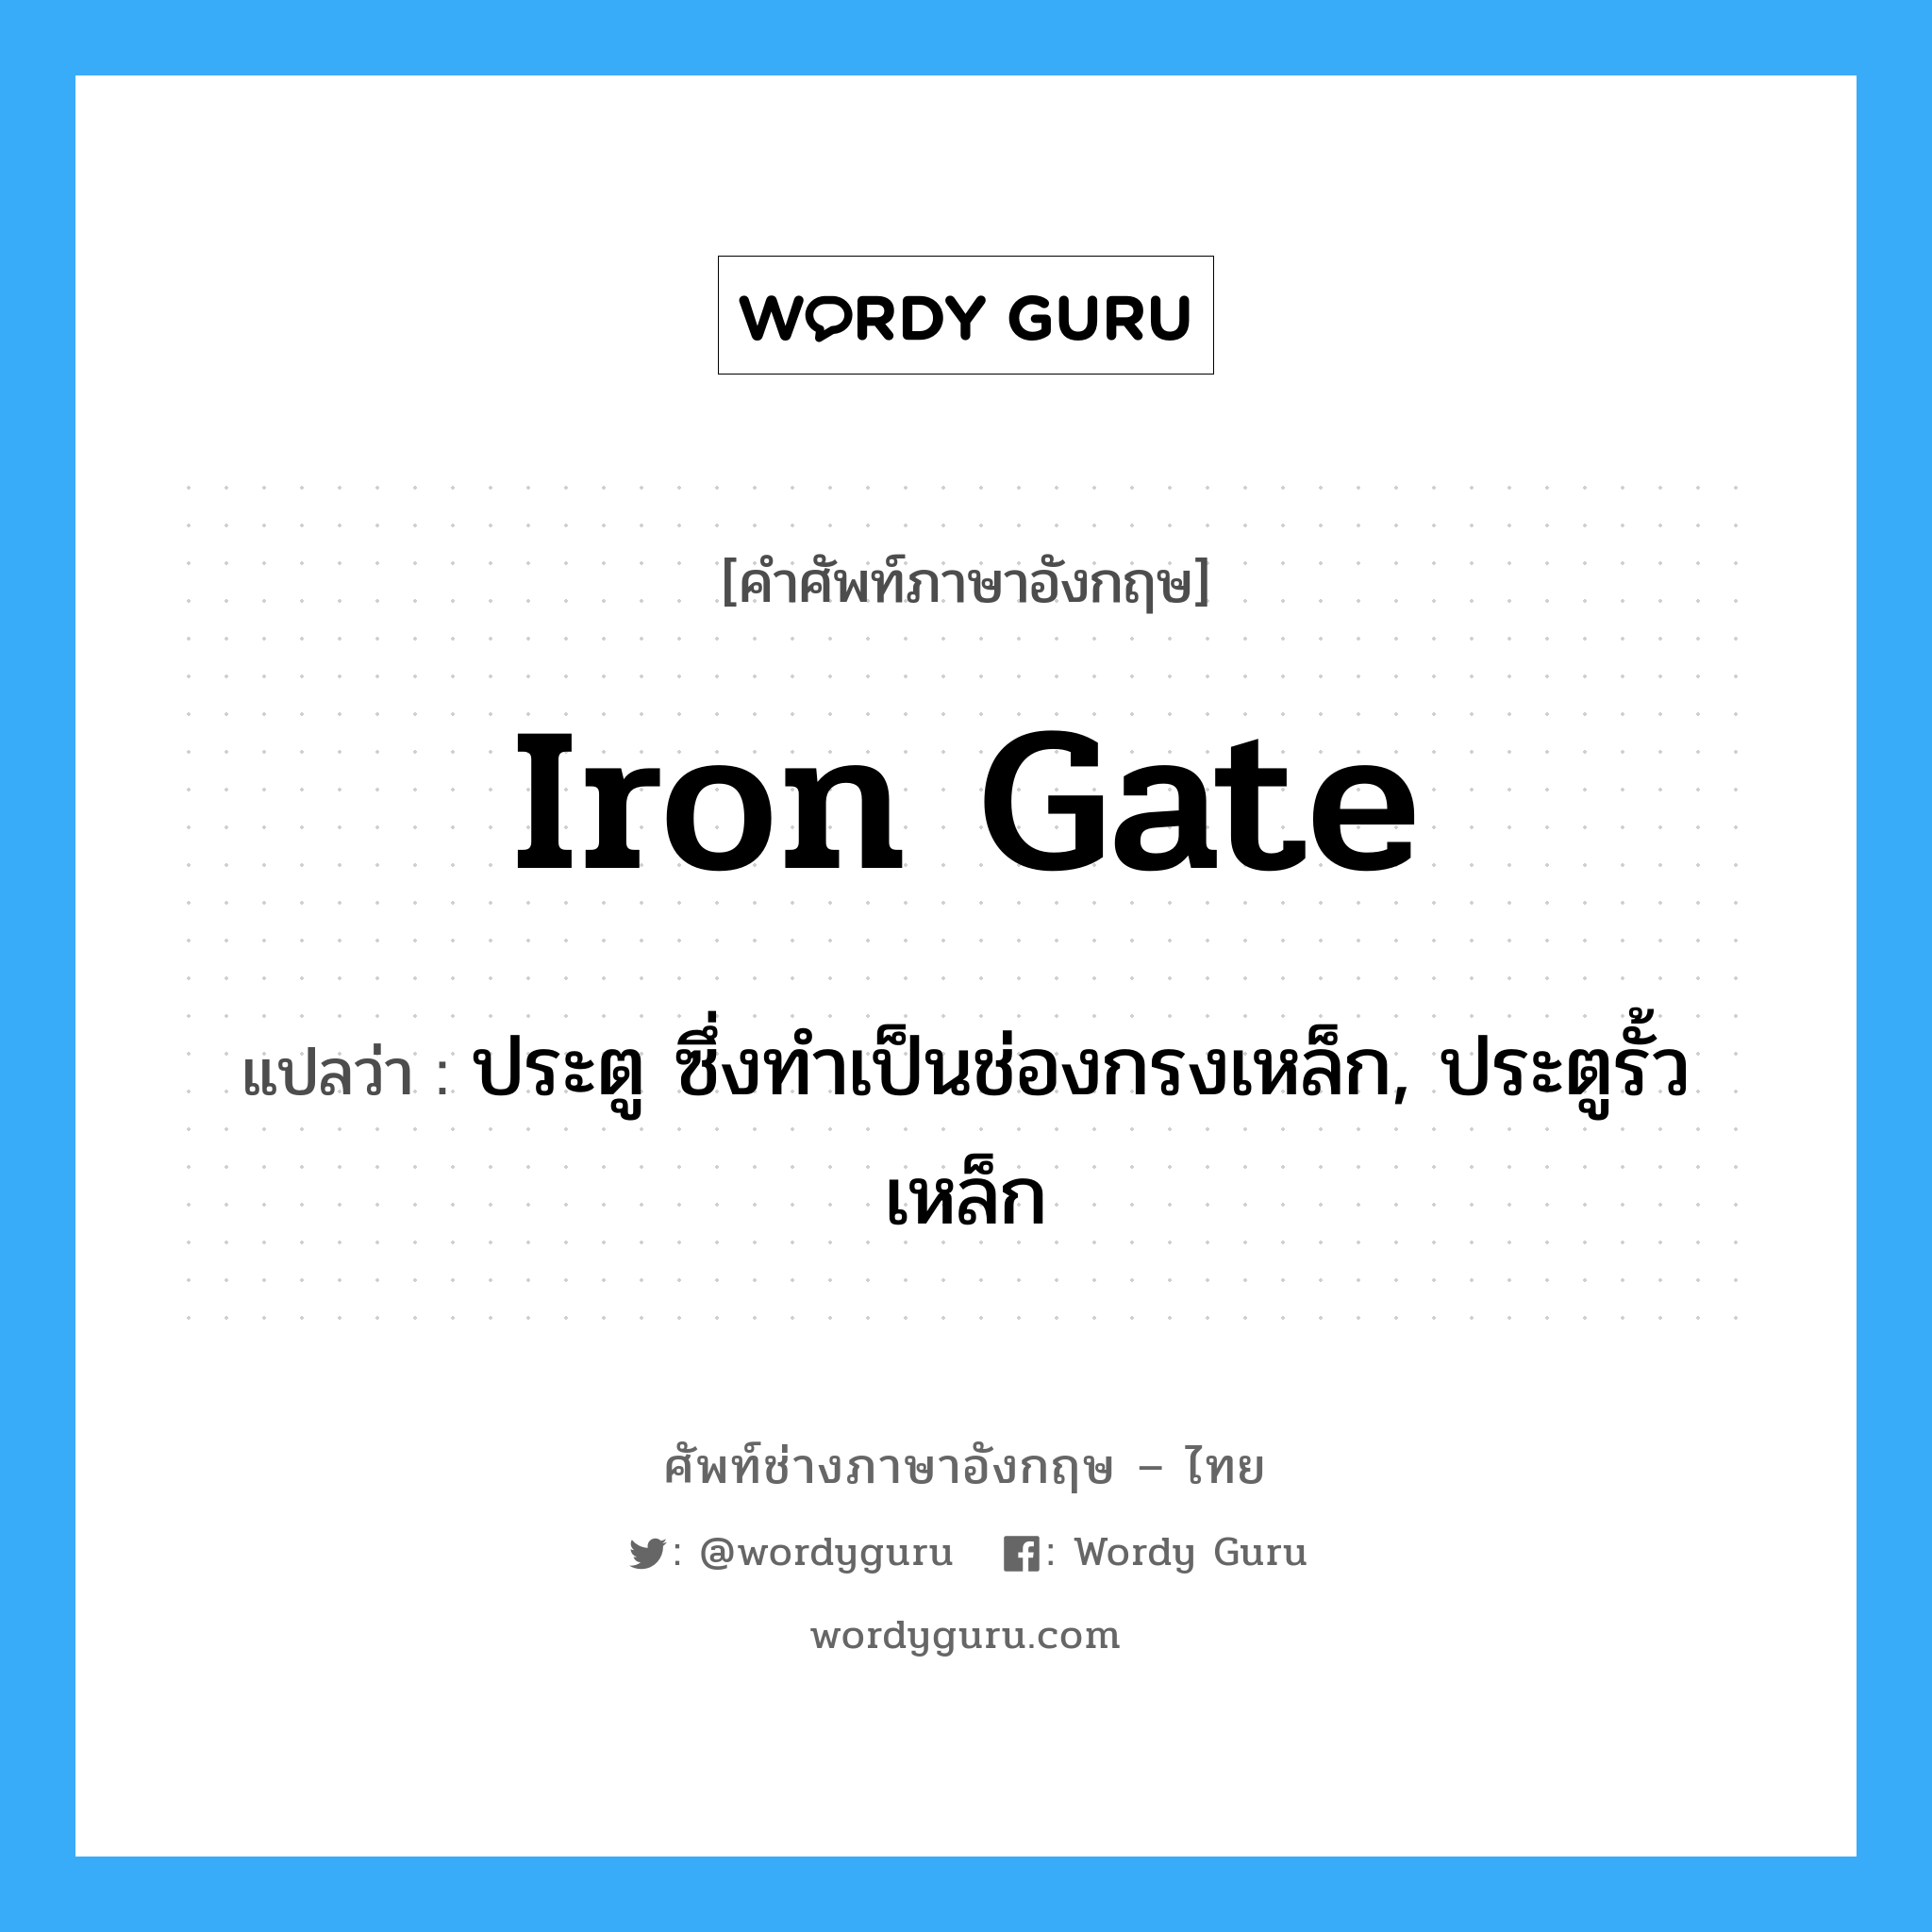 iron gate แปลว่า?, คำศัพท์ช่างภาษาอังกฤษ - ไทย iron gate คำศัพท์ภาษาอังกฤษ iron gate แปลว่า ประตู ซึ่งทำเป็นช่องกรงเหล็ก, ประตูรั้วเหล็ก